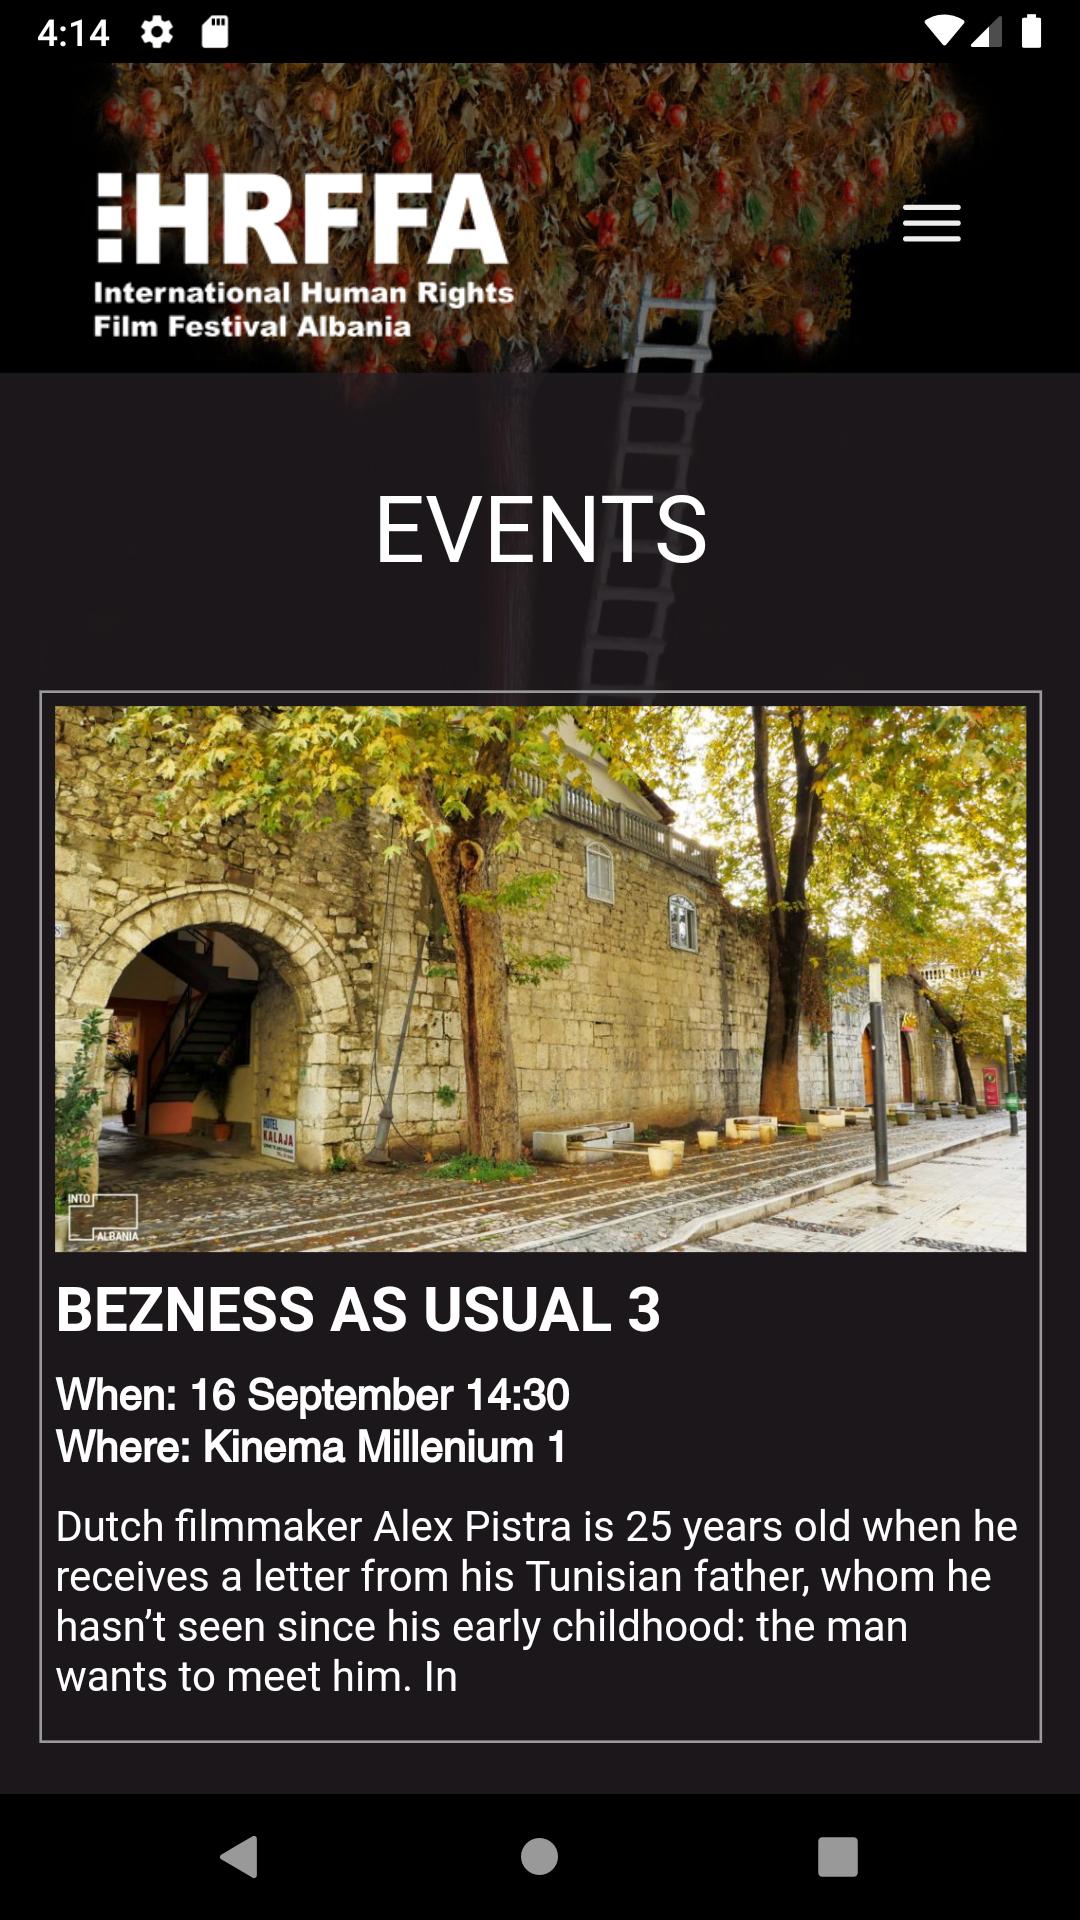 Bezness forum